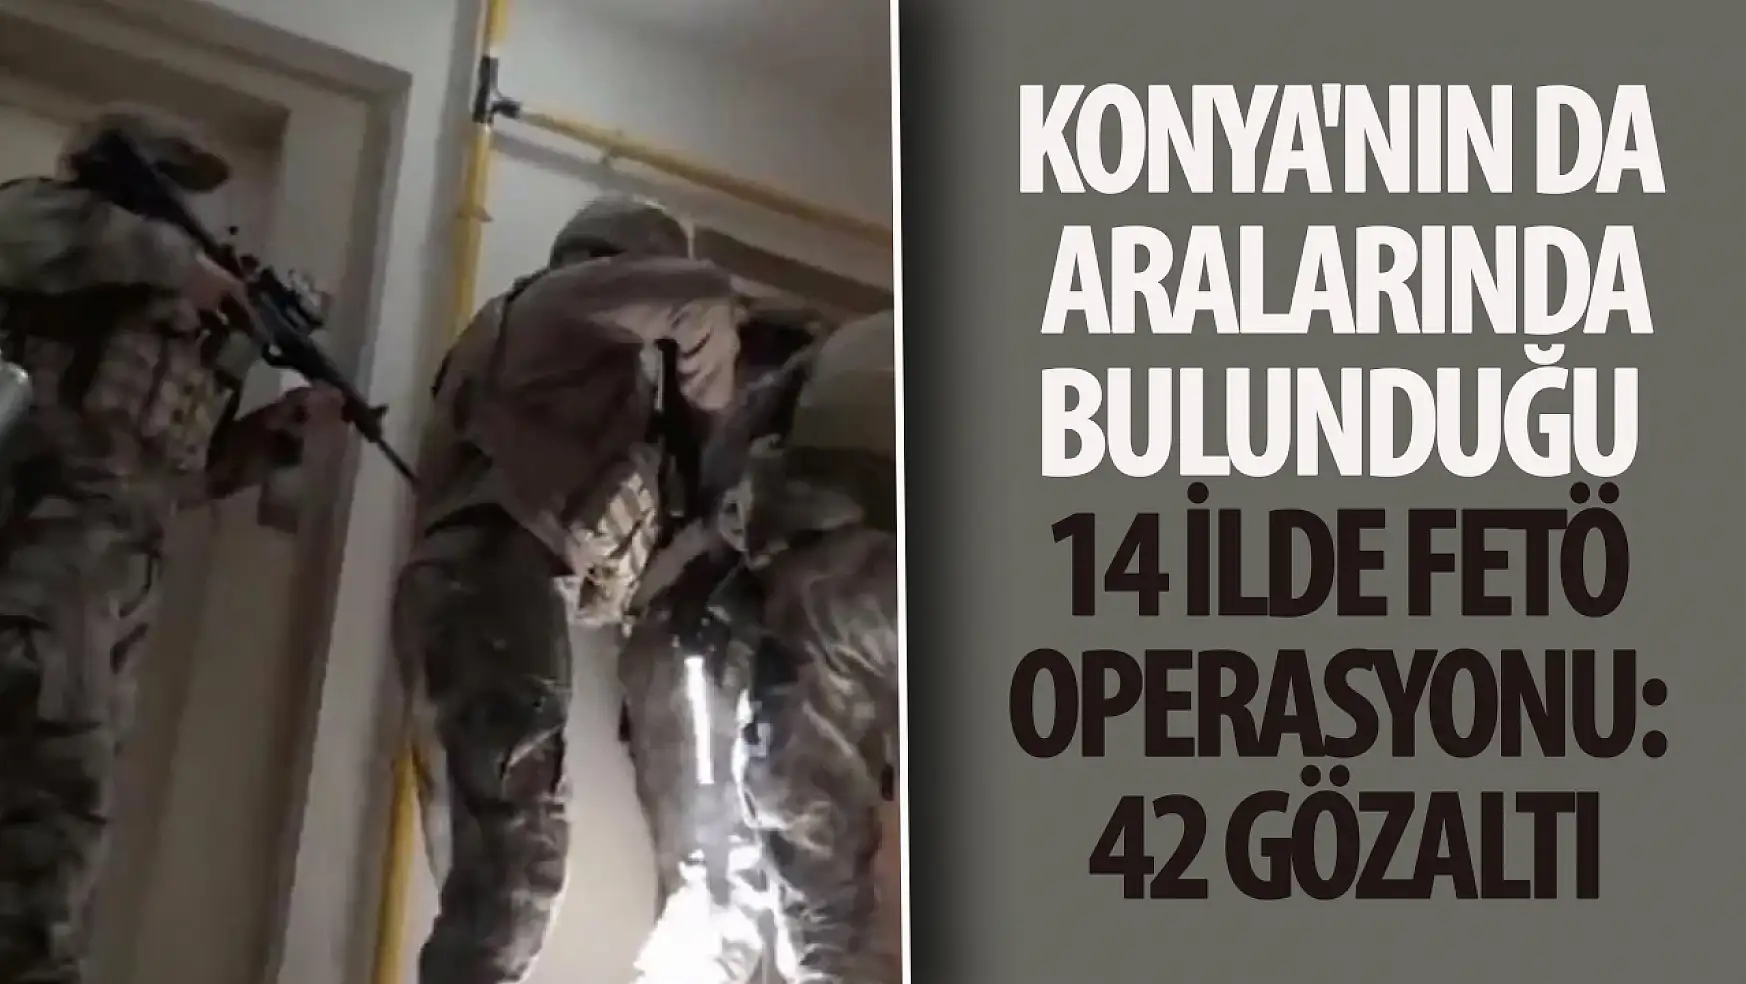 Konya'nın da bulunduğu 14 ilde FETÖ operasyonu: 42 gözaltı!